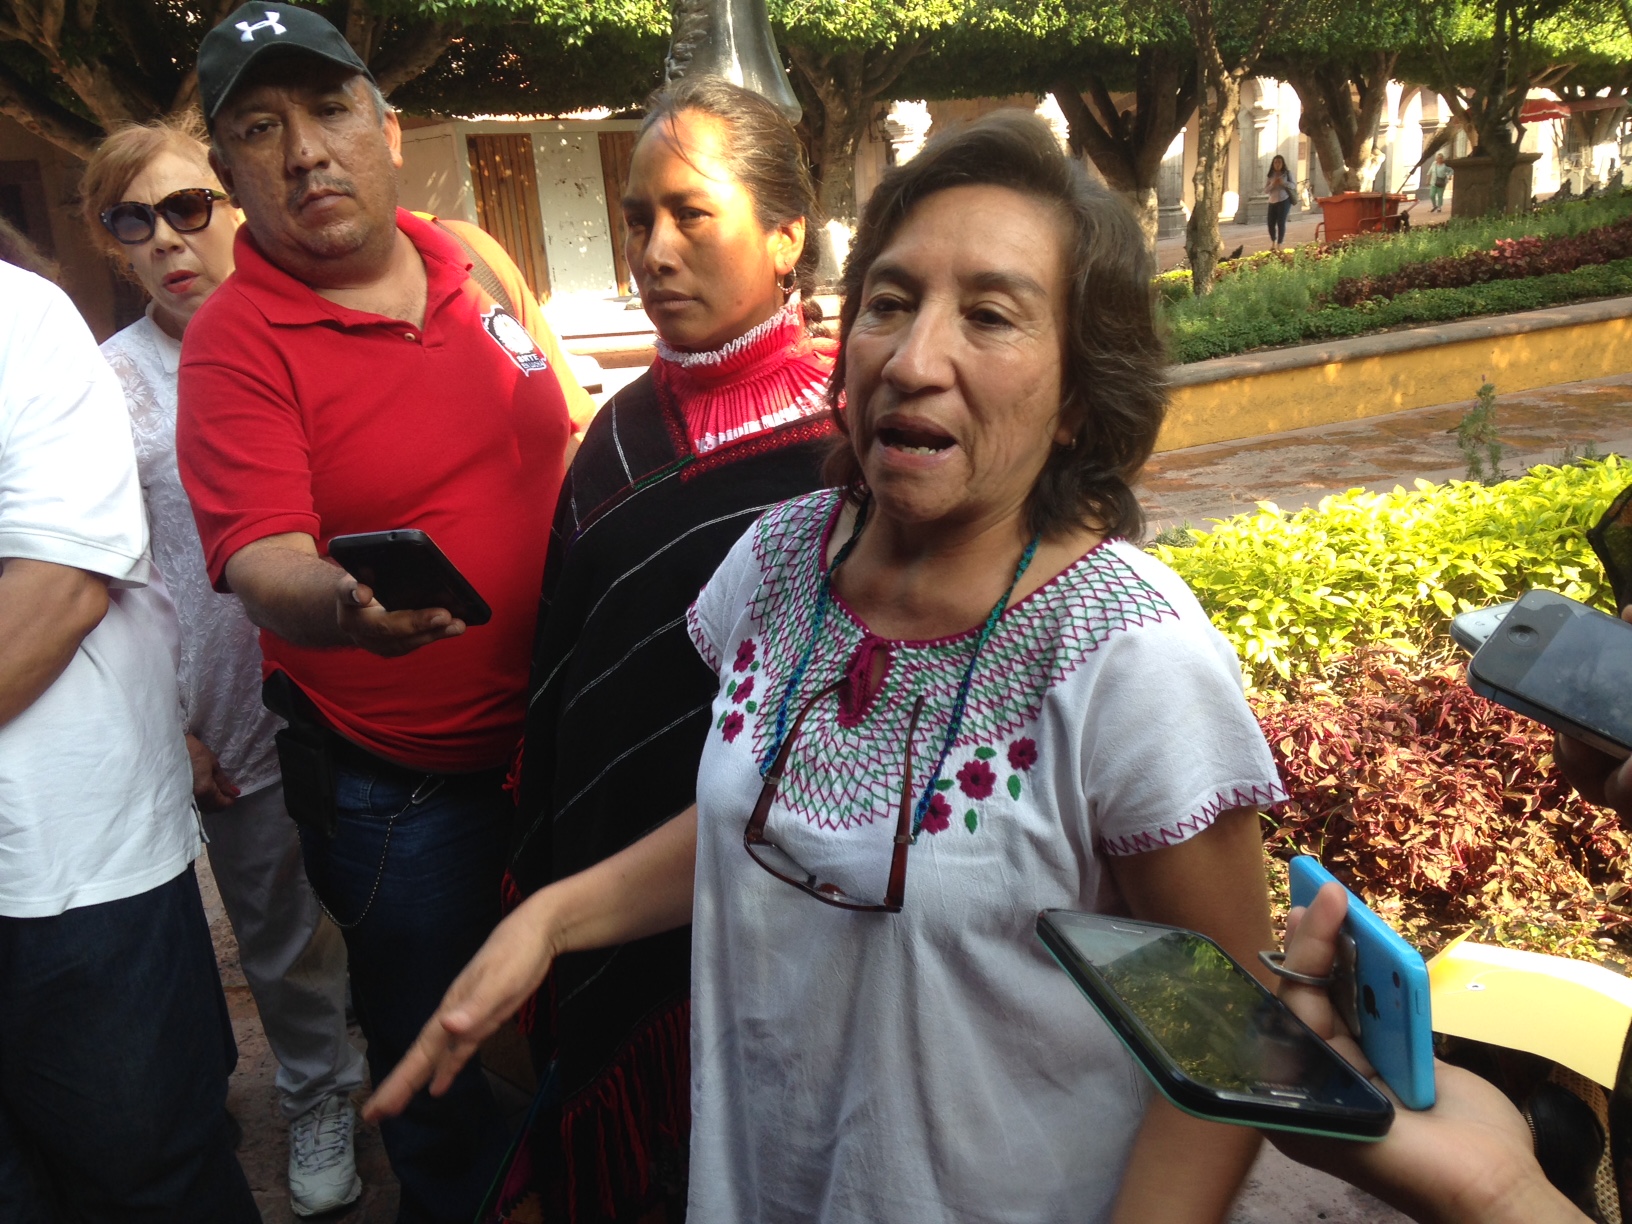  Familiares del activista Sergio Gerónimo Sánchez desconocen el motivo de su detención